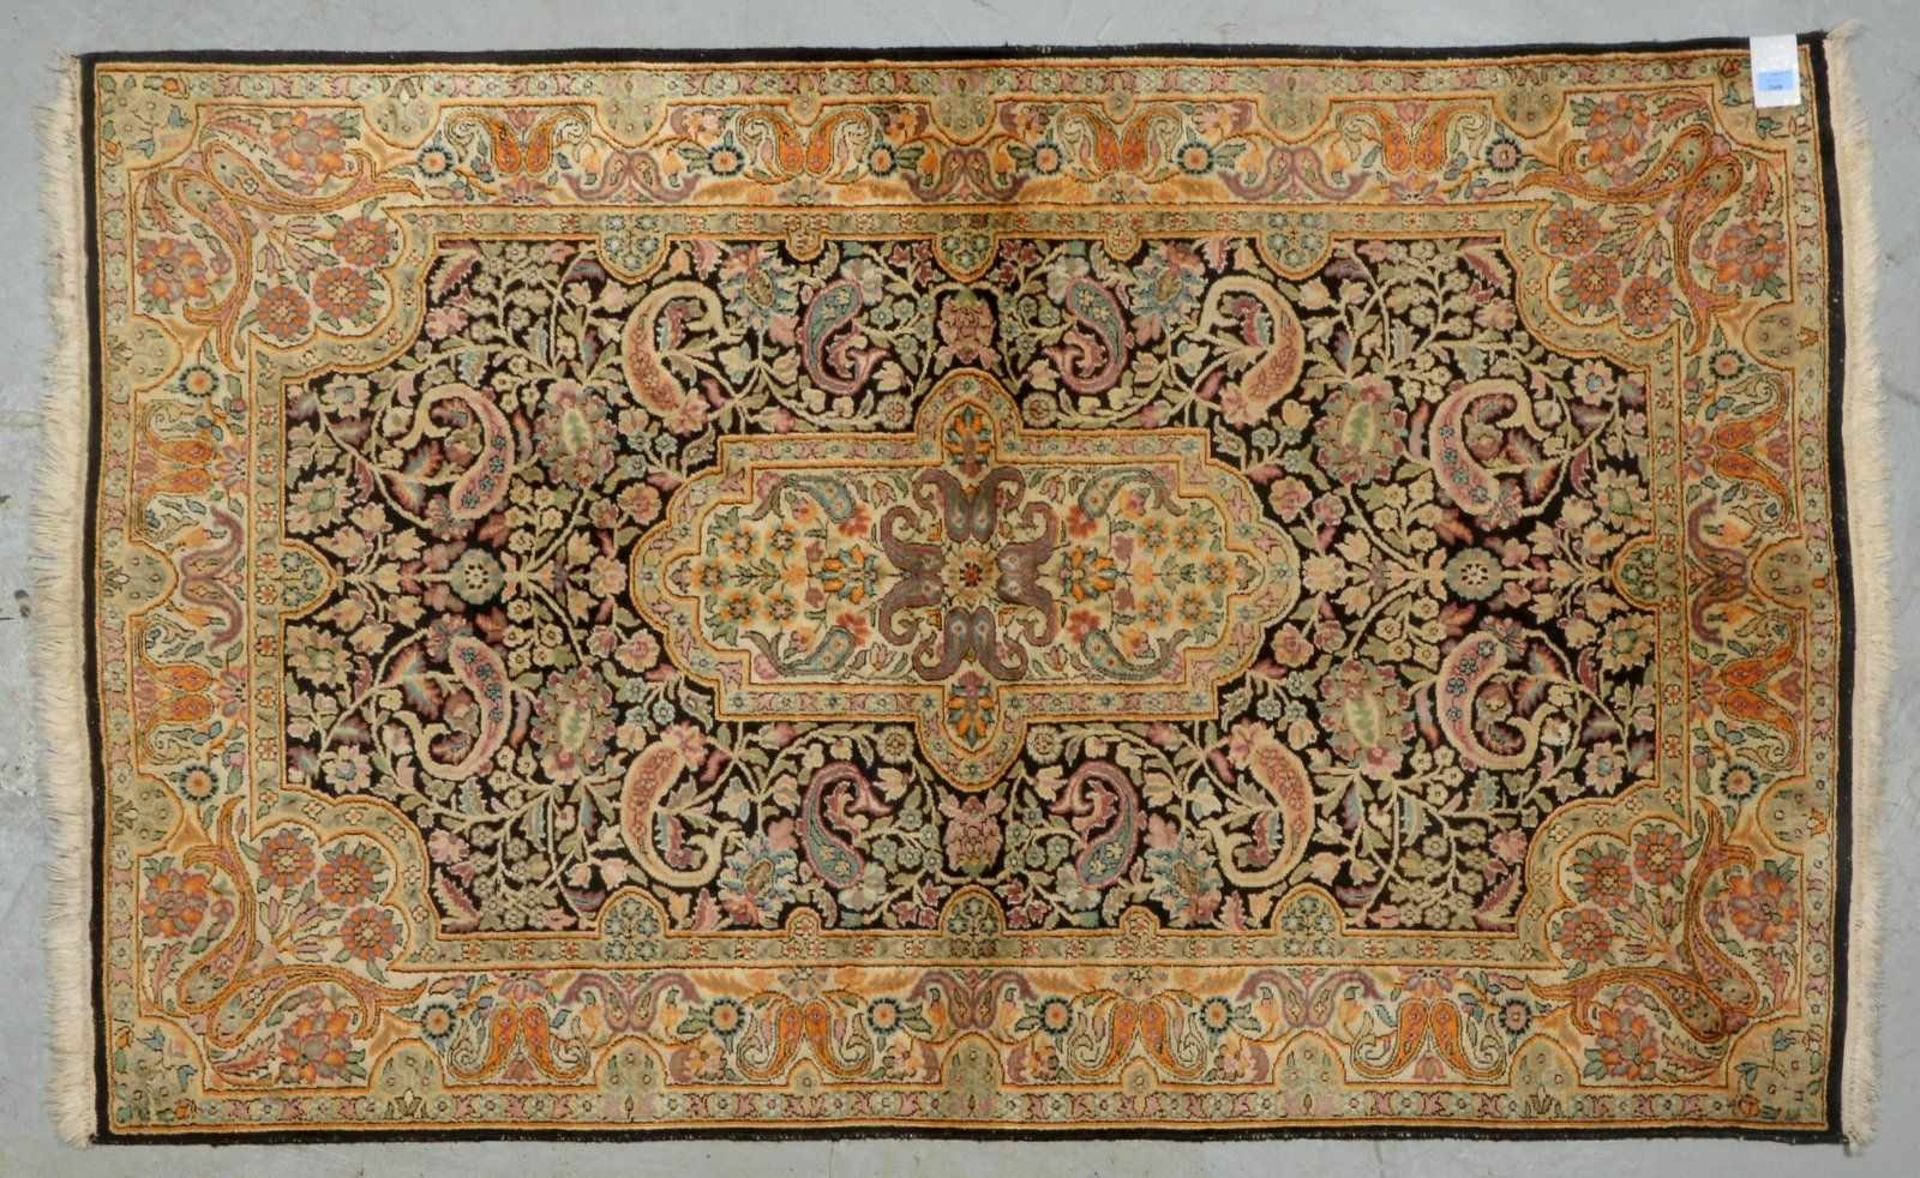 Kaschmir-Seidenteppich, Seide auf Baumwolle, komplett; Maße 187 x 117 cm